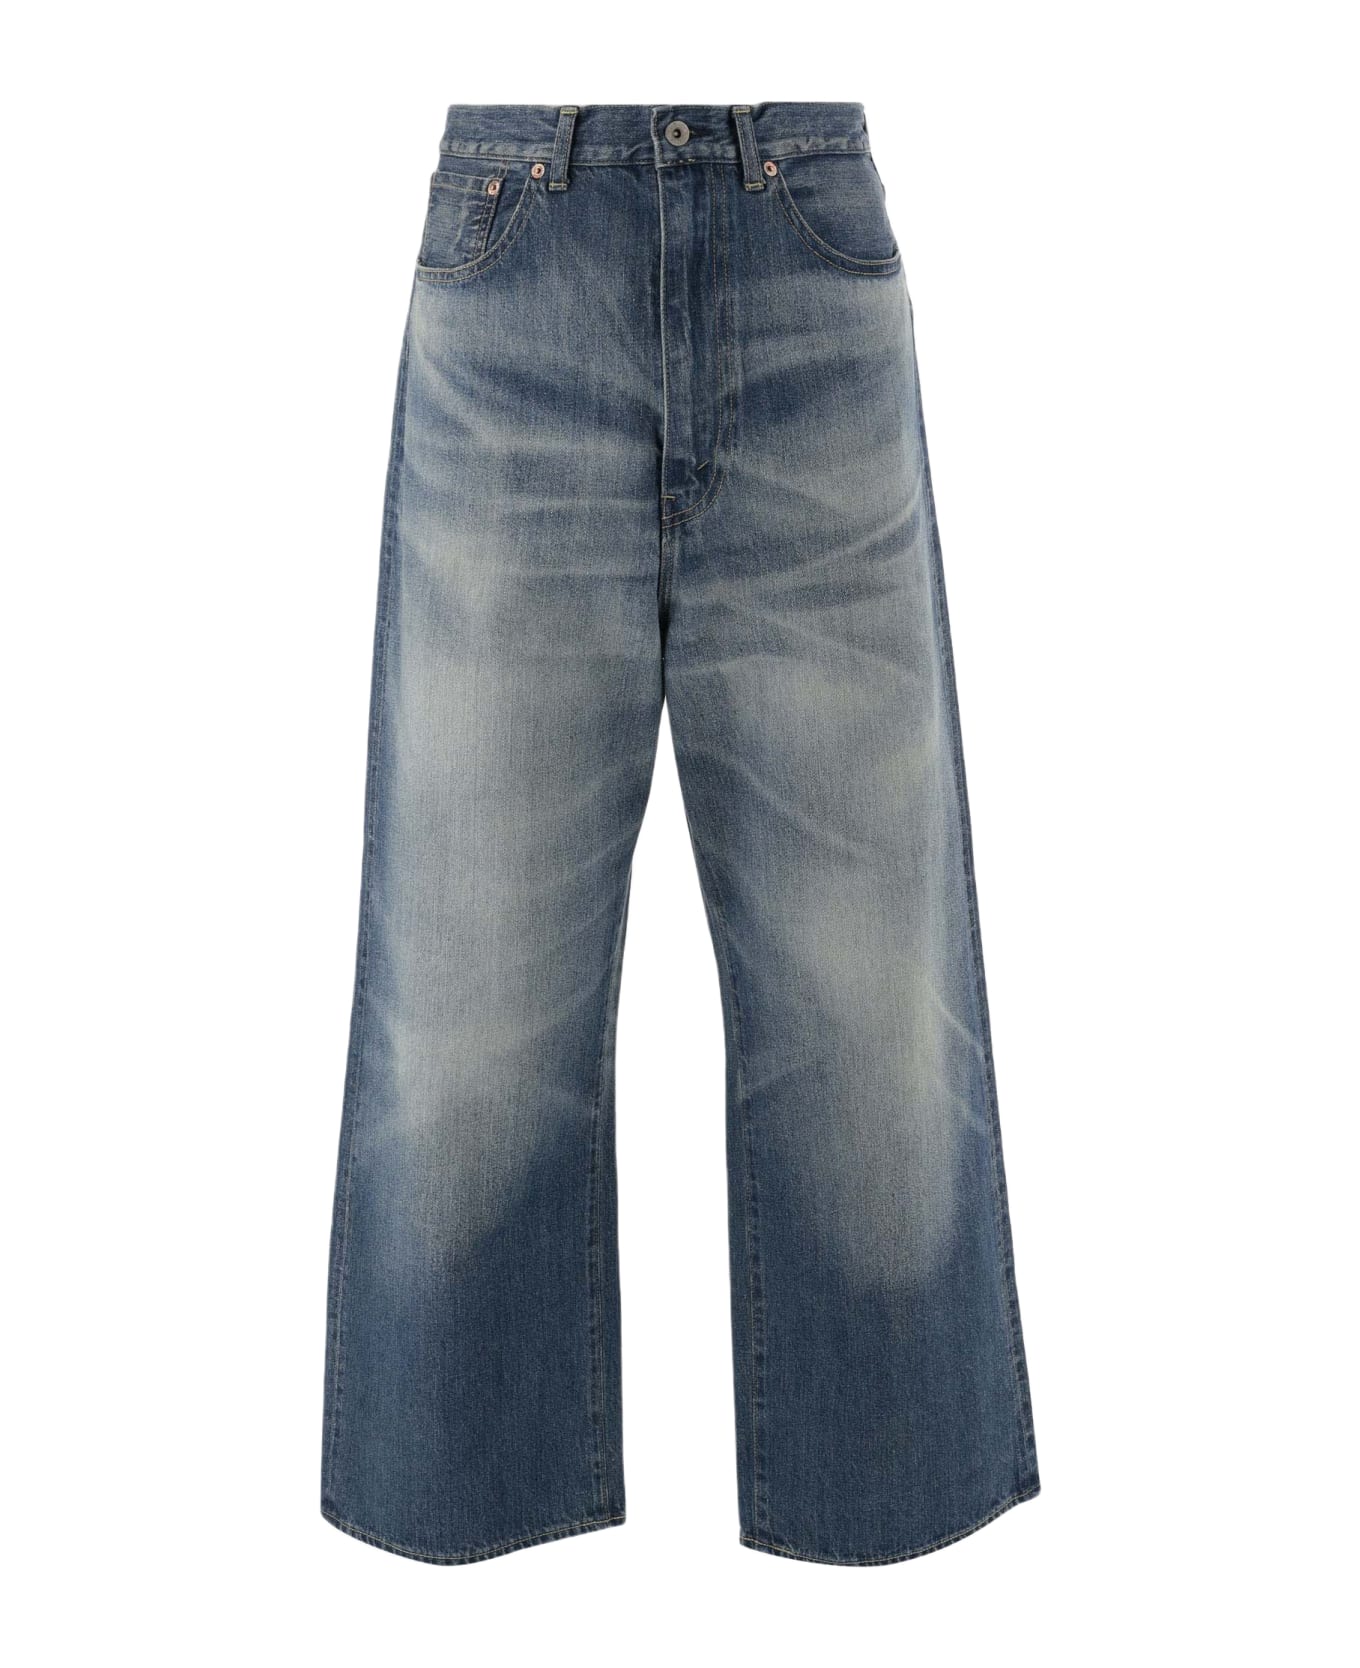 Junya Watanabe X Carhartt Denim Jeans - Denim